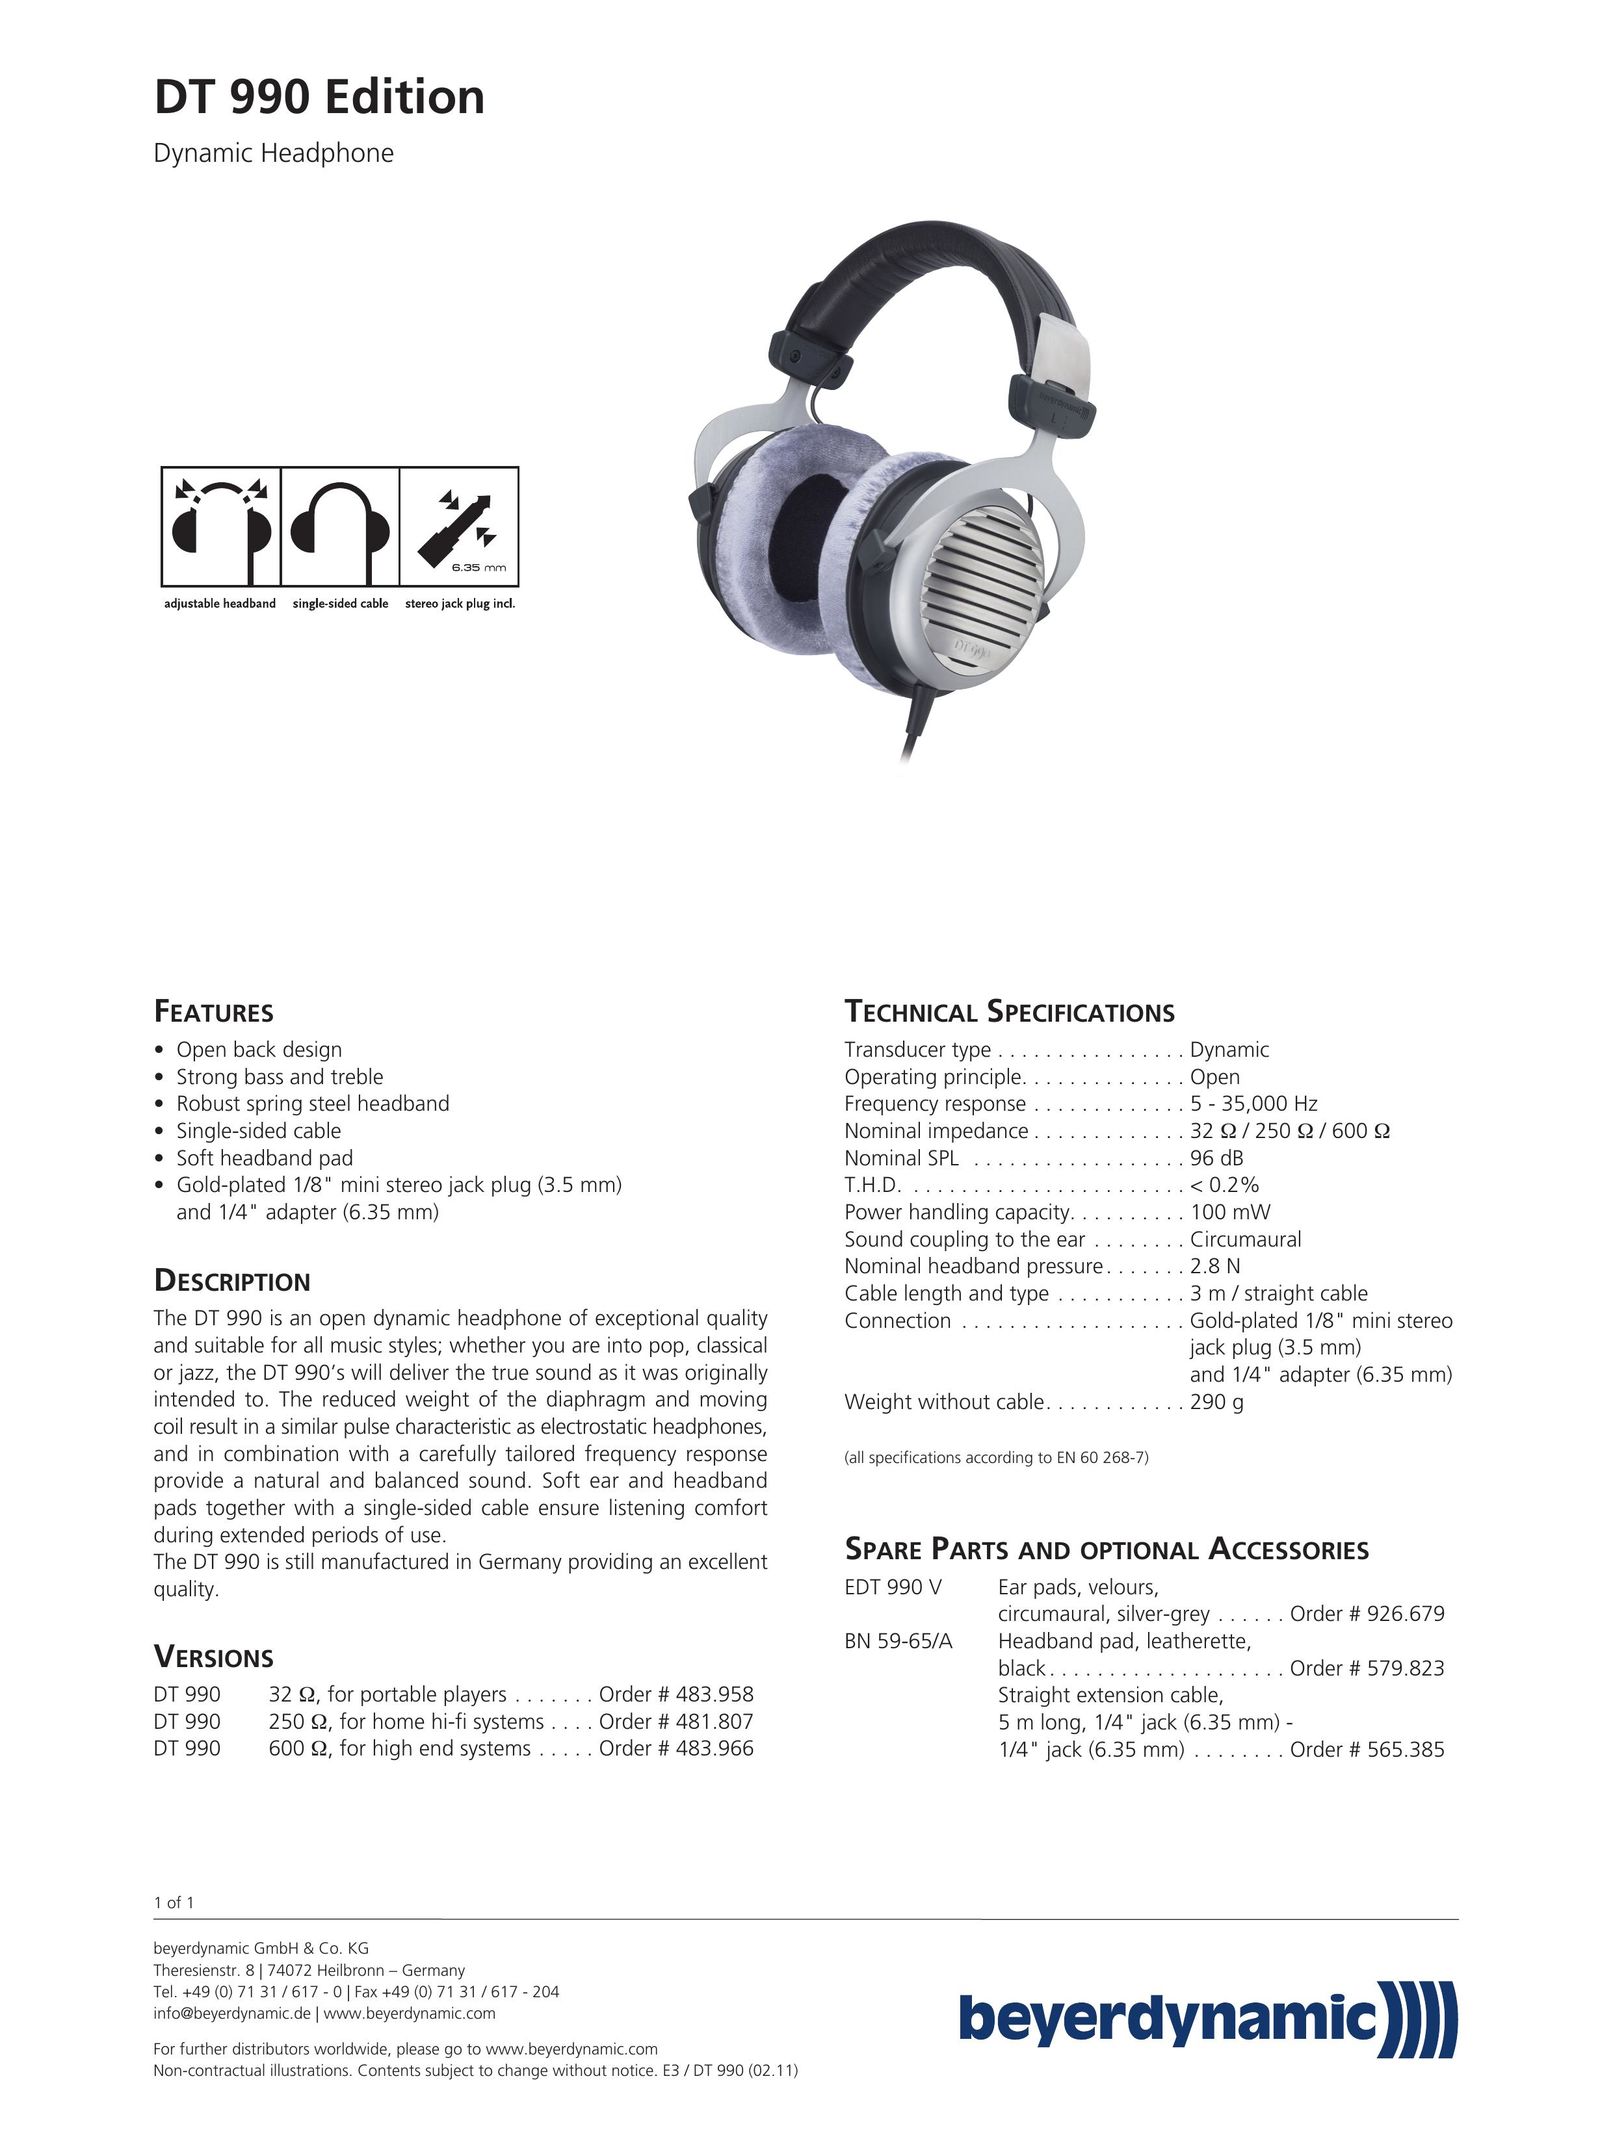 Beyerdynamic 481807 Headphones User Manual